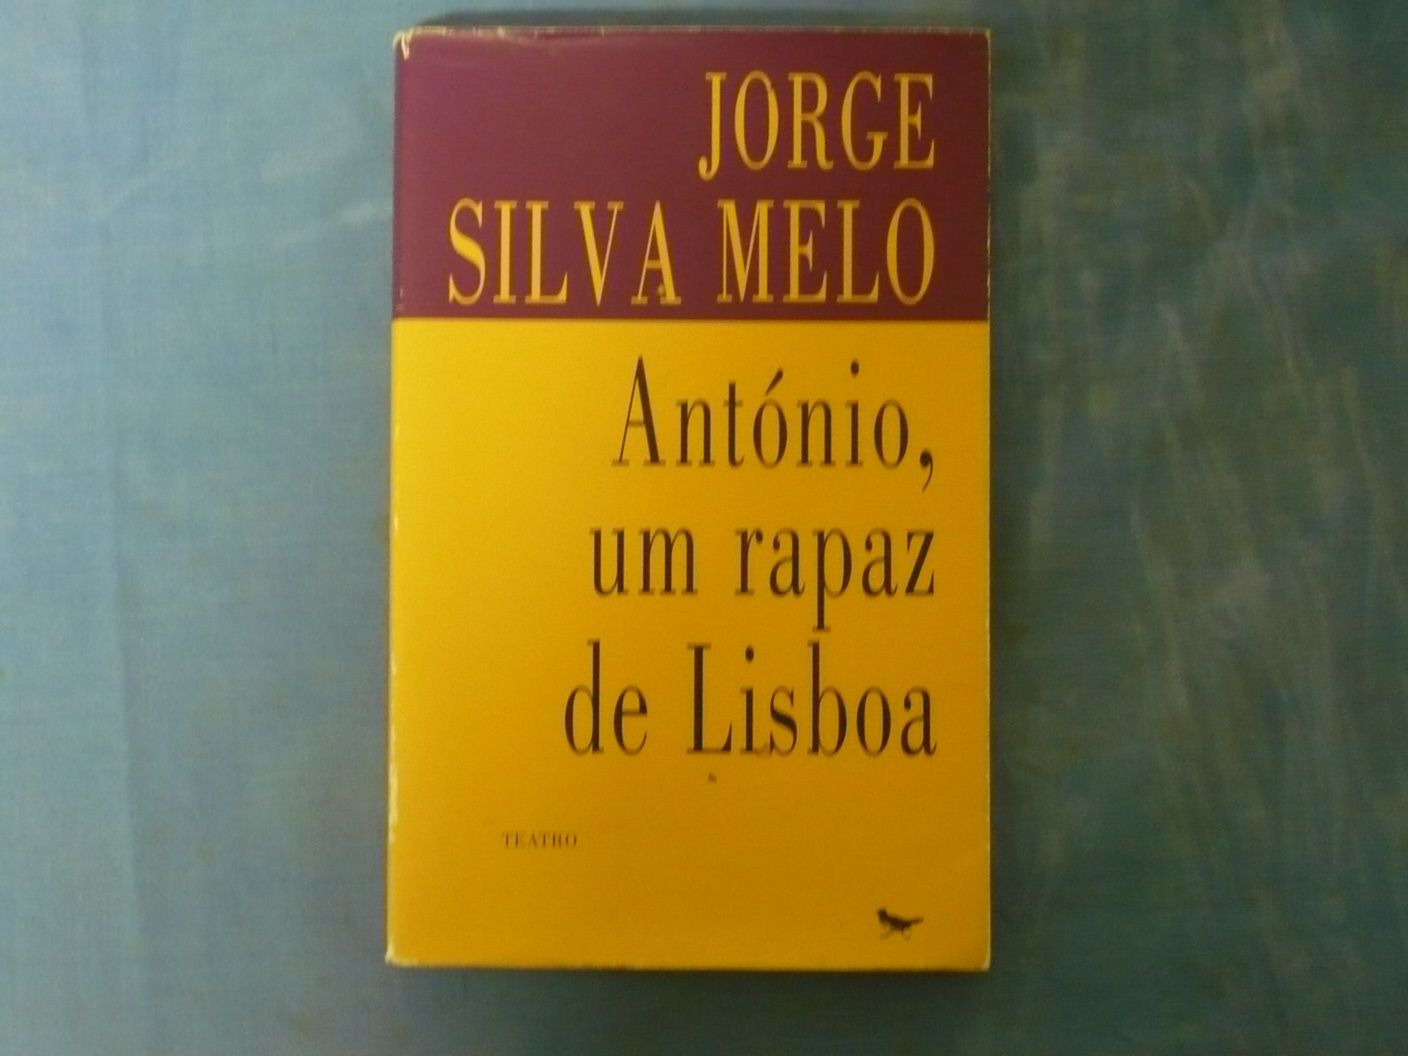 António, um rapaz de Lisboa (Jorge Silva Melo)